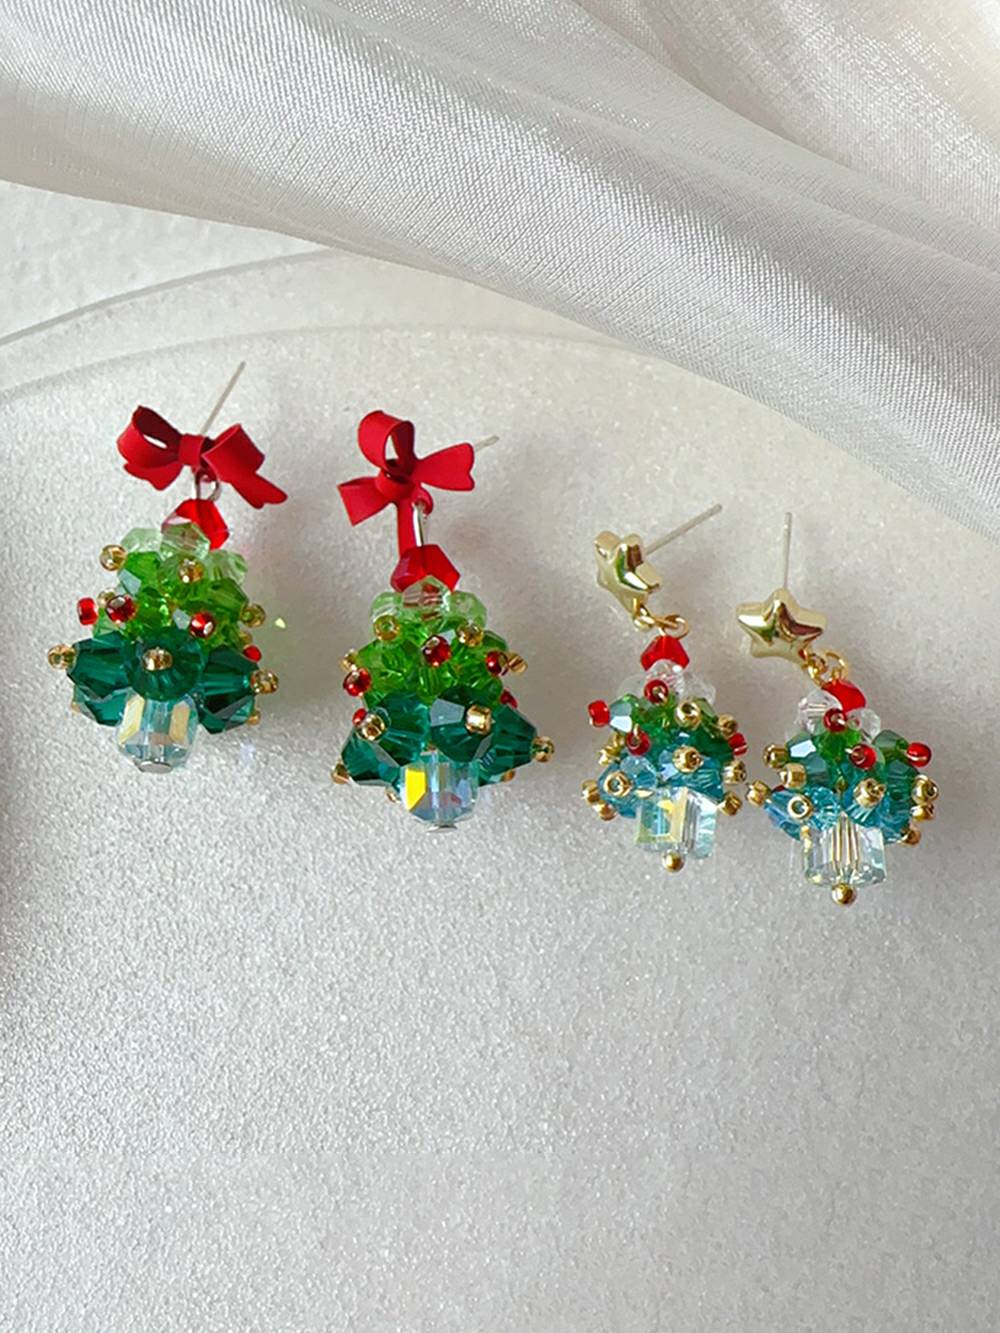 Håndlagde juletre med perler i krystall